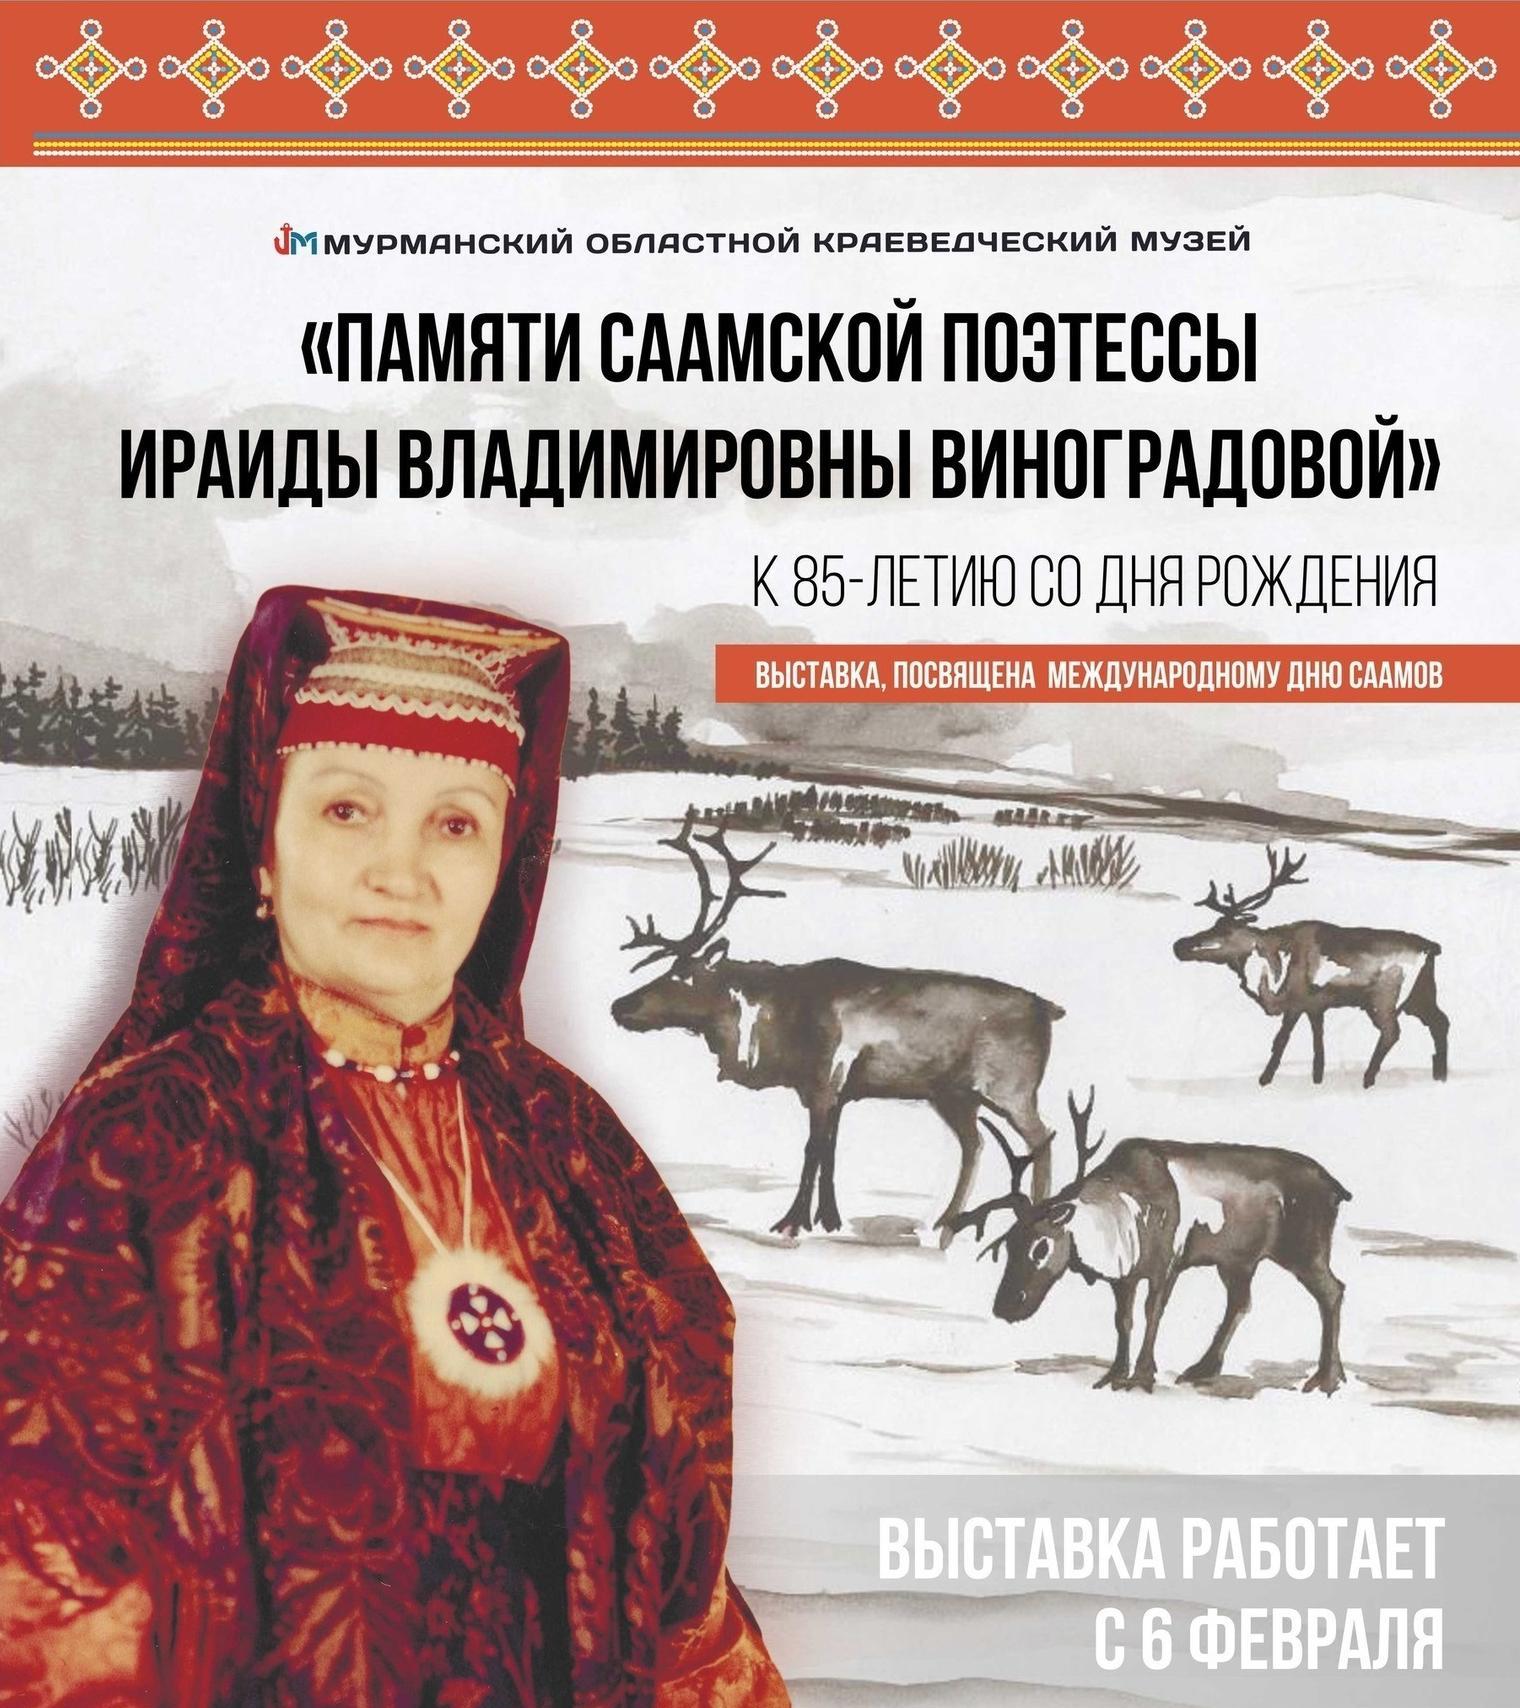 Выставка памяти саамской поэтессы Ираиды Виноградовой открылась в Мурманске